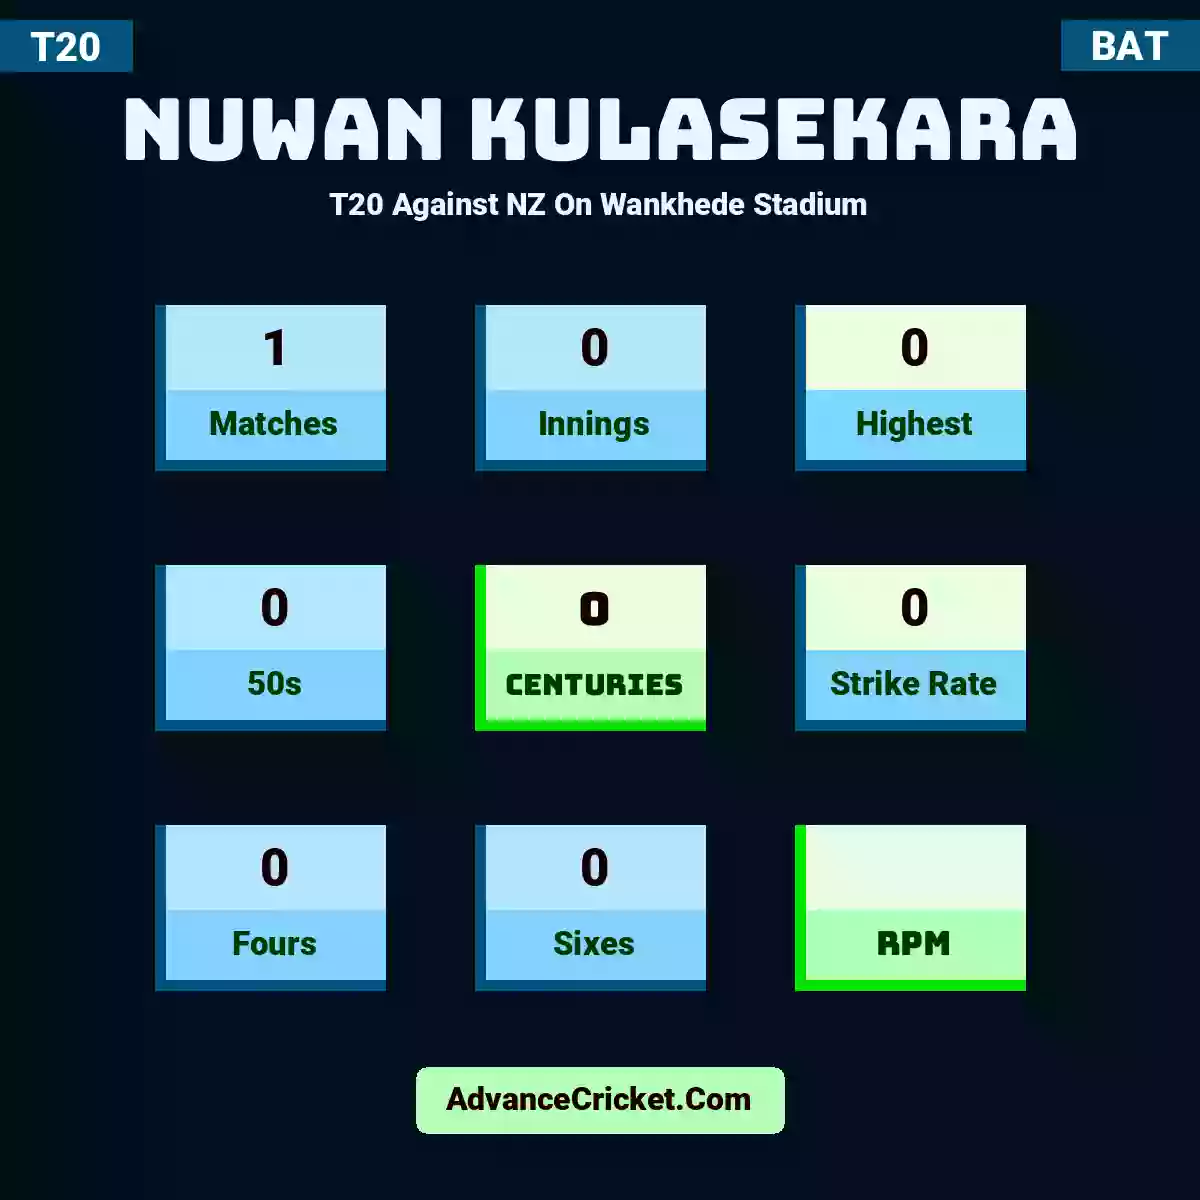 Nuwan Kulasekara T20  Against NZ On Wankhede Stadium, Nuwan Kulasekara played 1 matches, scored 0 runs as highest, 0 half-centuries, and 0 centuries, with a strike rate of 0. N.Kulasekara hit 0 fours and 0 sixes.